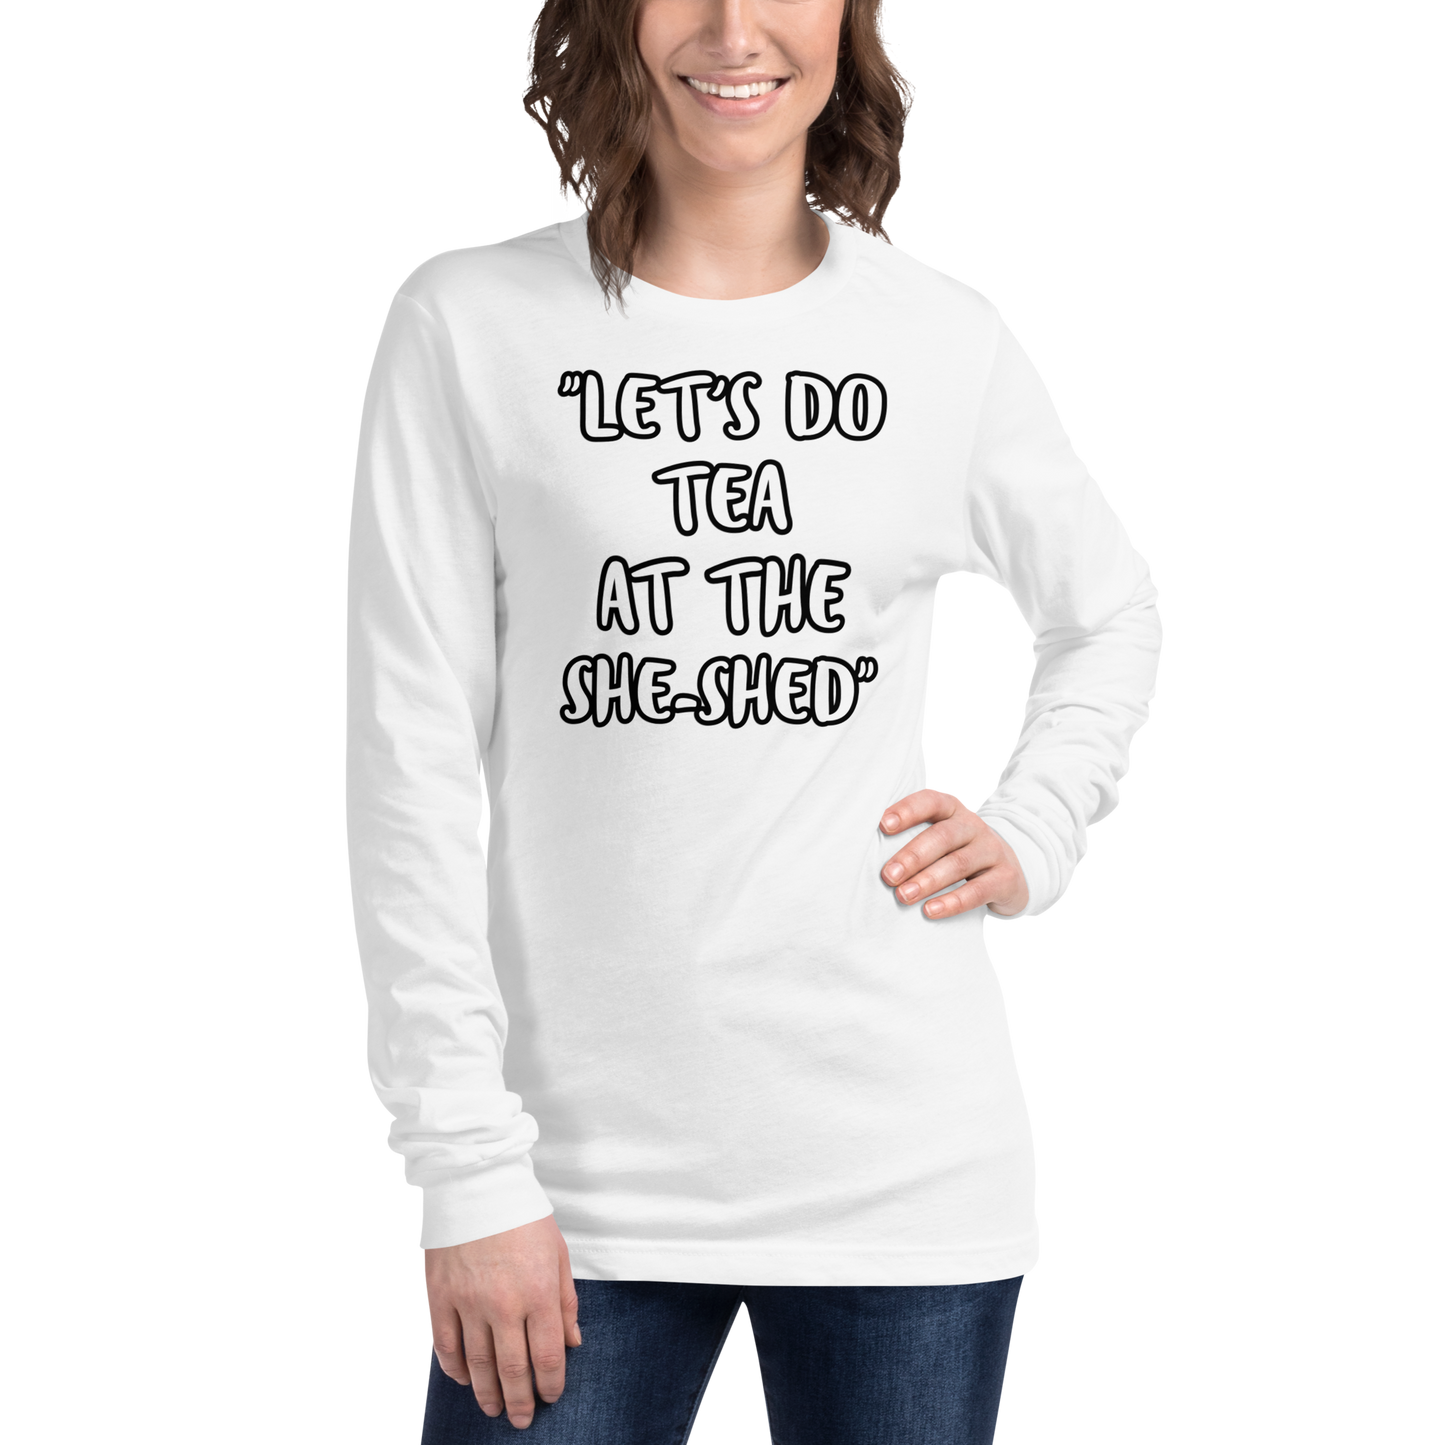 Tea She-Shed Long Sleeve Shirt